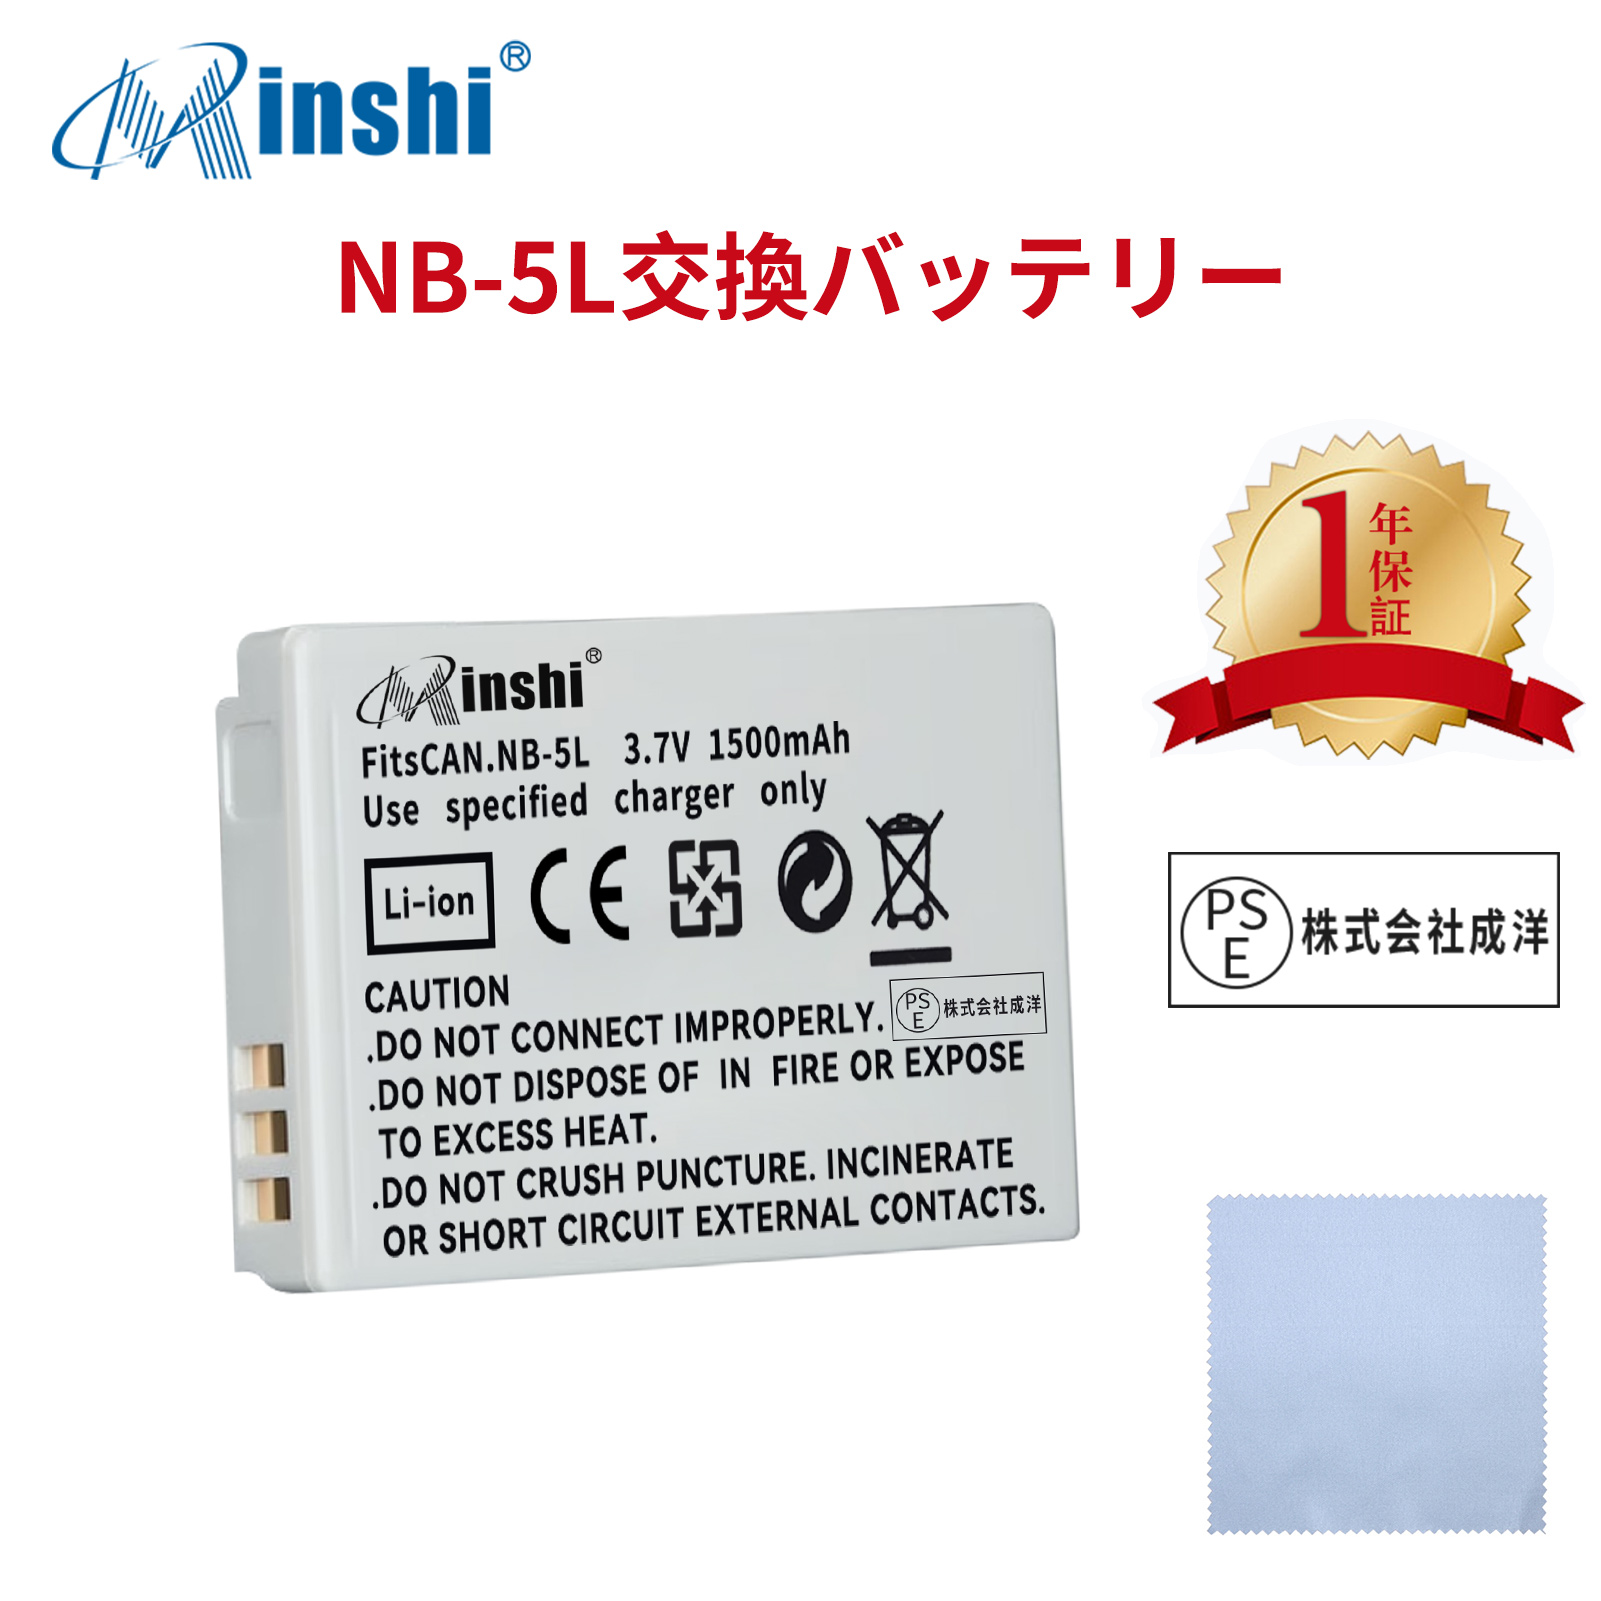 【清潔布ー付】minshi CANON SX210IS 【1500mAh 3.7V】PSE認定済 高品質 NB-5L 交換用バッテリー